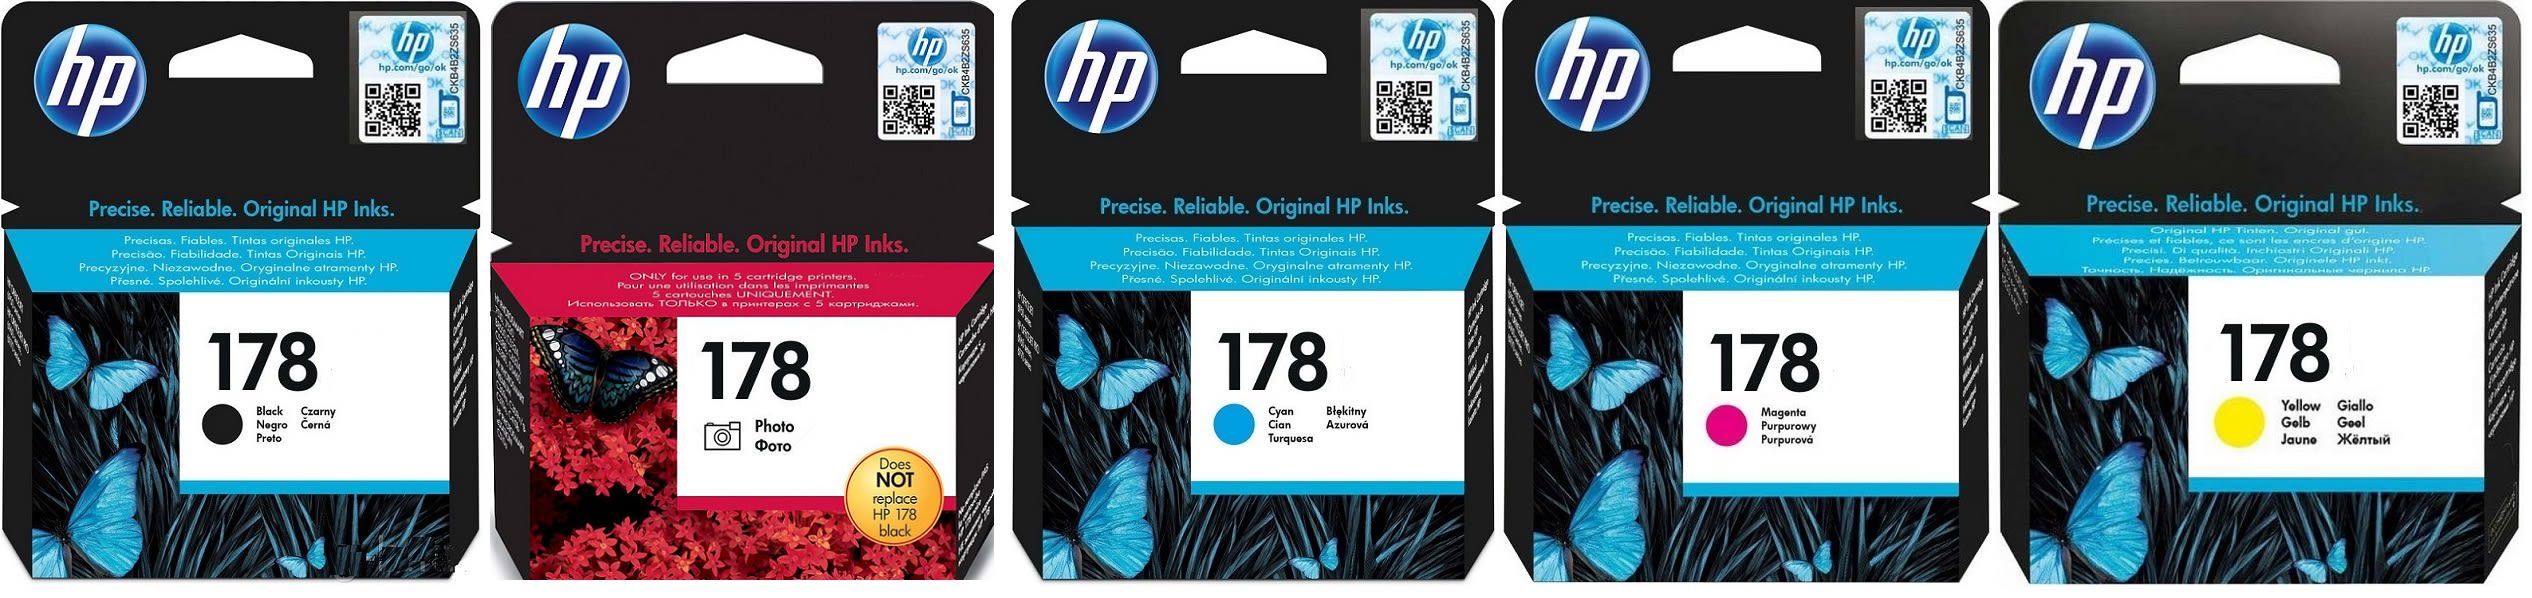 Картриджи hp 178 для HP Photosmart C5370. Купить комплект оригинальных картриджей.